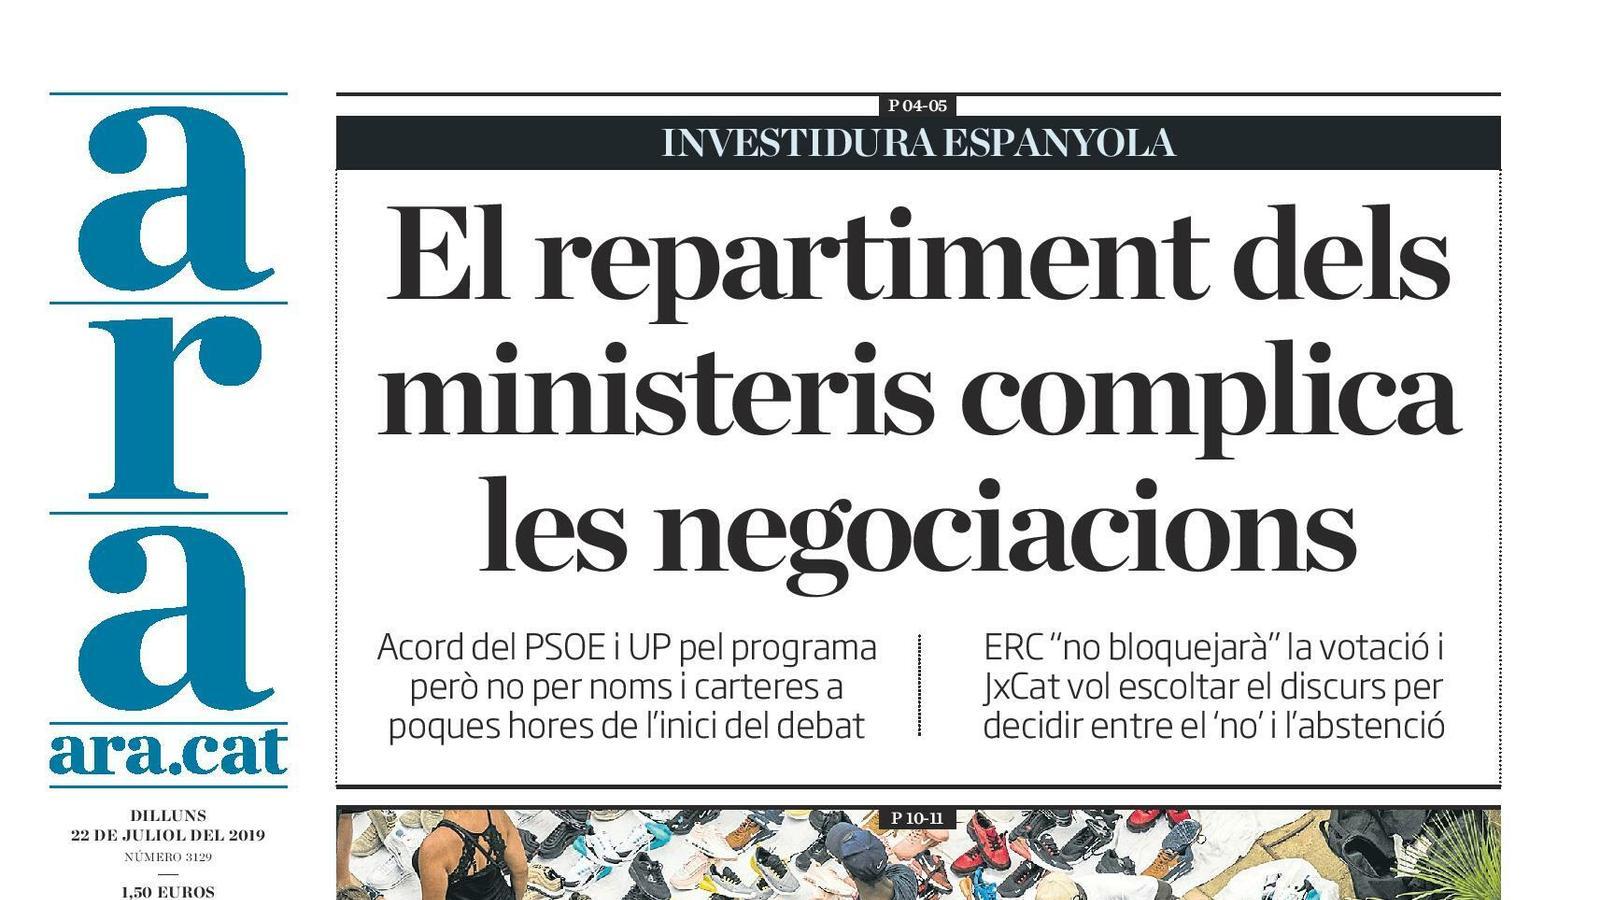 "El repartiment dels ministeris complica les negociacions", la portada de l'ARA